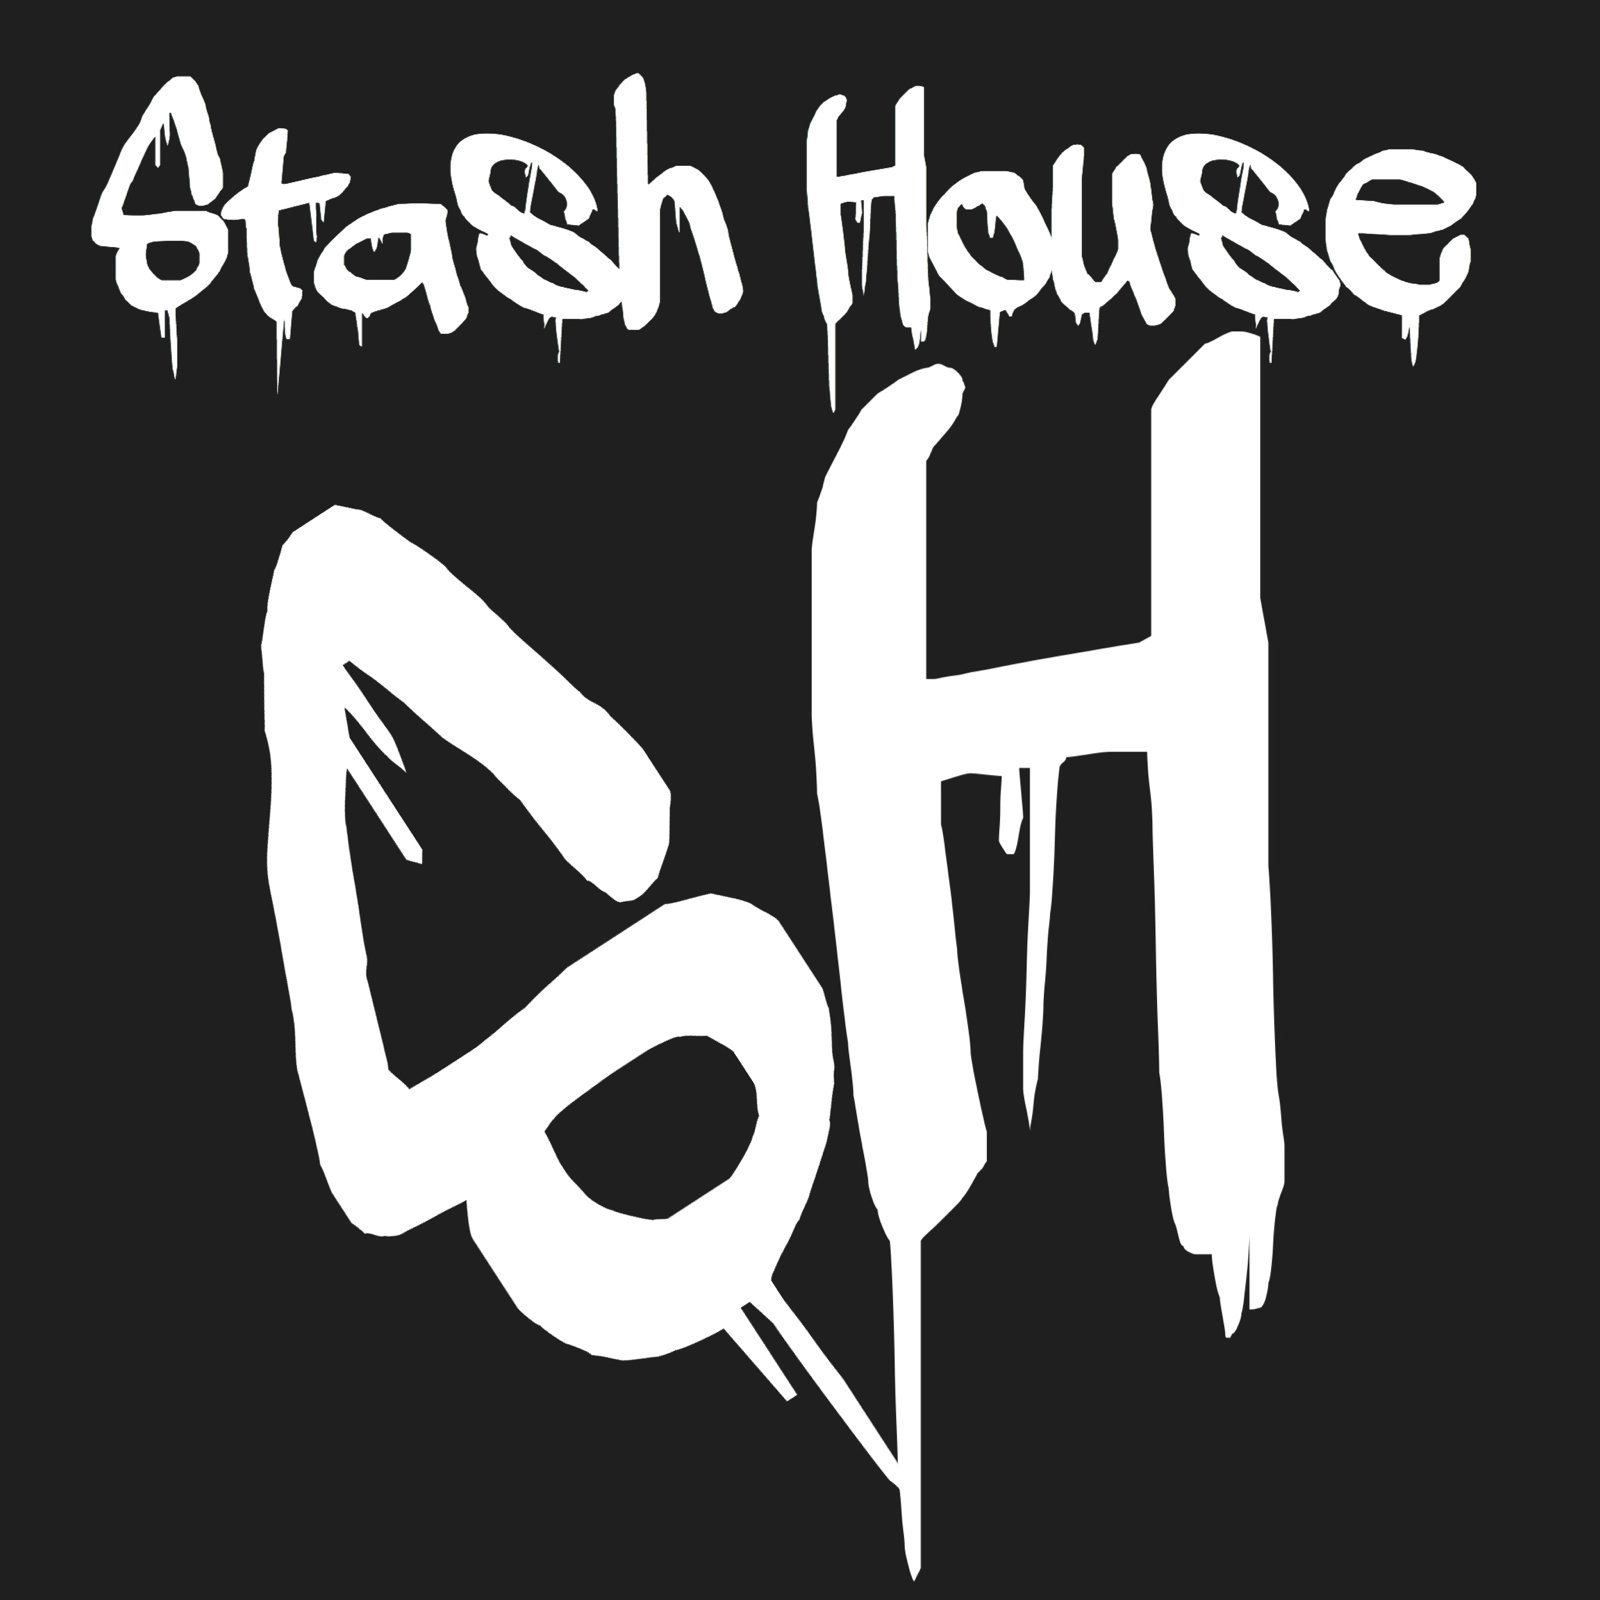 Stash houses - pastorlending